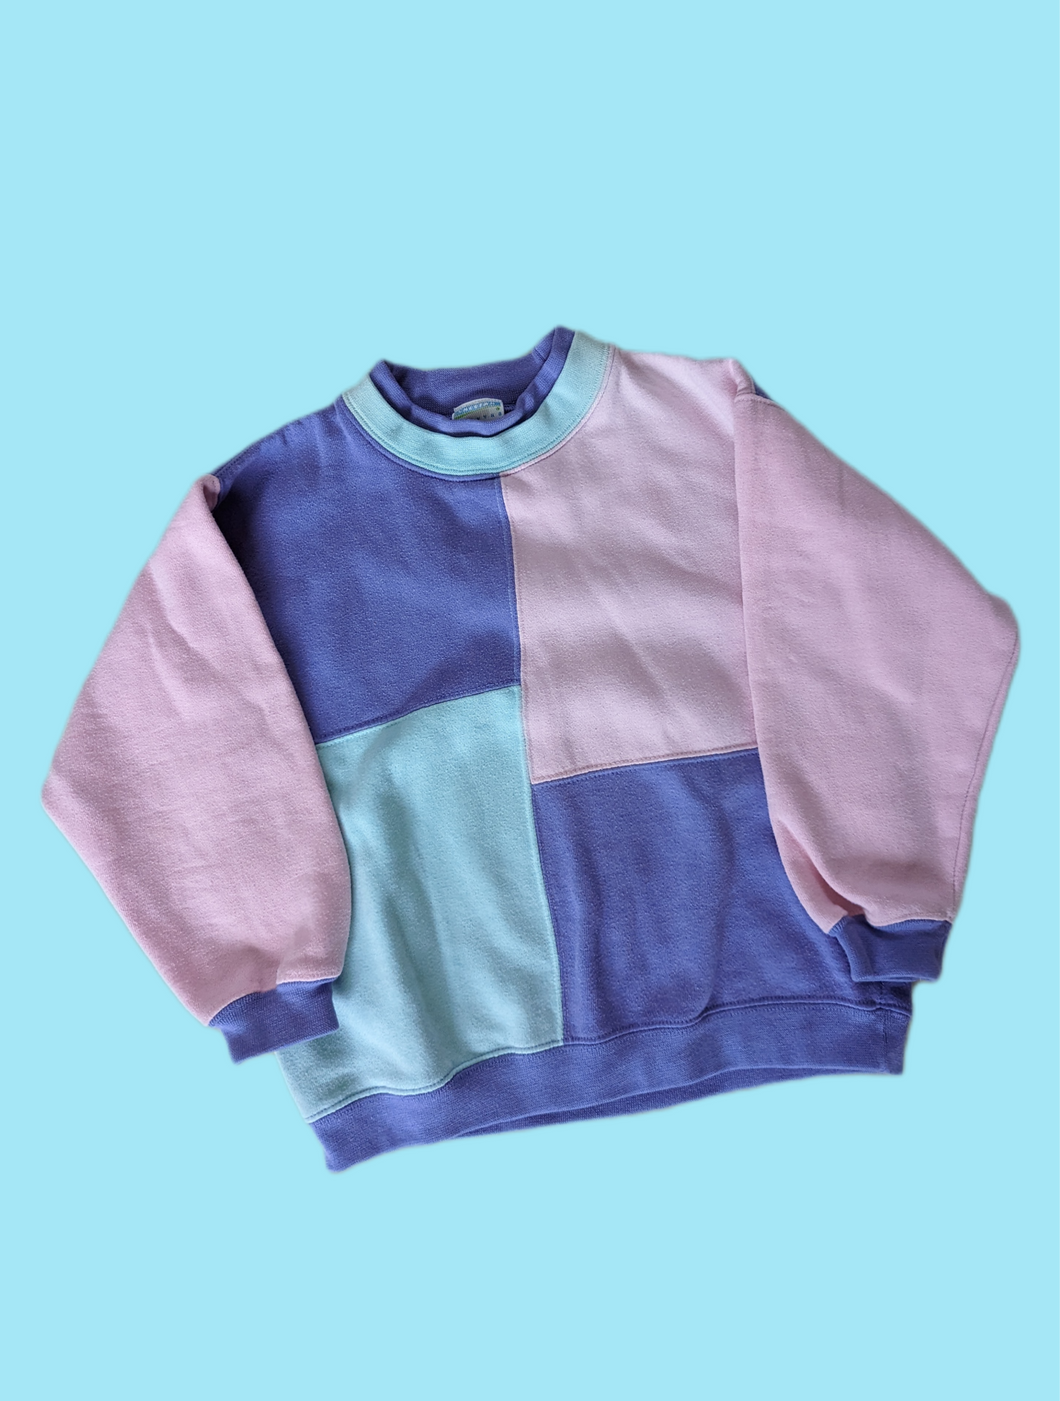 Colorblock Pastel Sweatshirt 5y